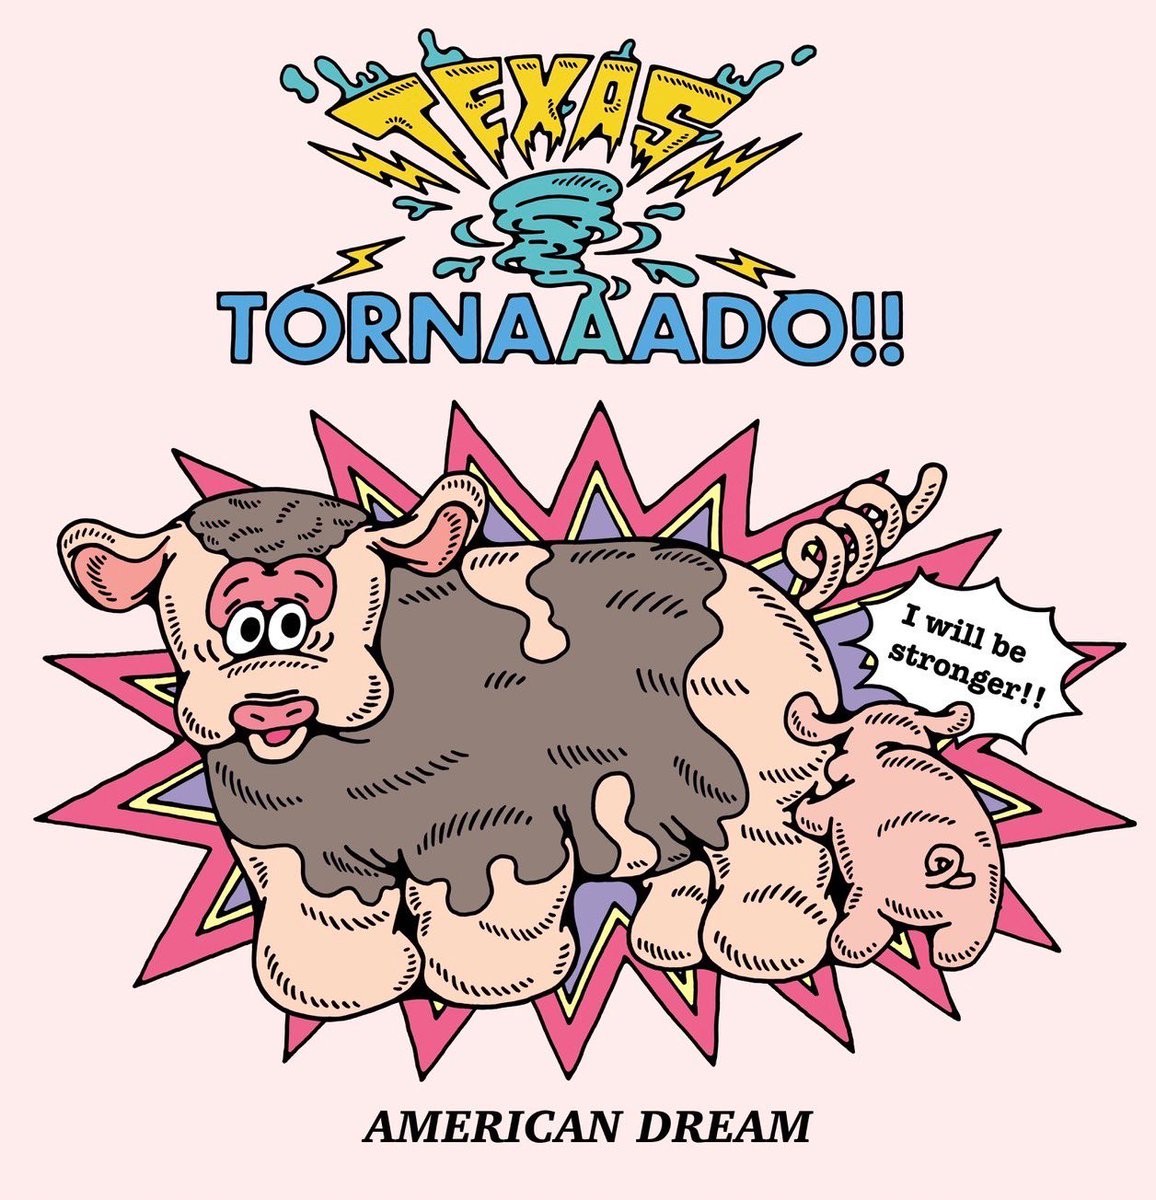 TEXAS TORNAAADO‼︎🌪🐮💫

#texastornado #cow #illustration #American #MIXFURPLANNING